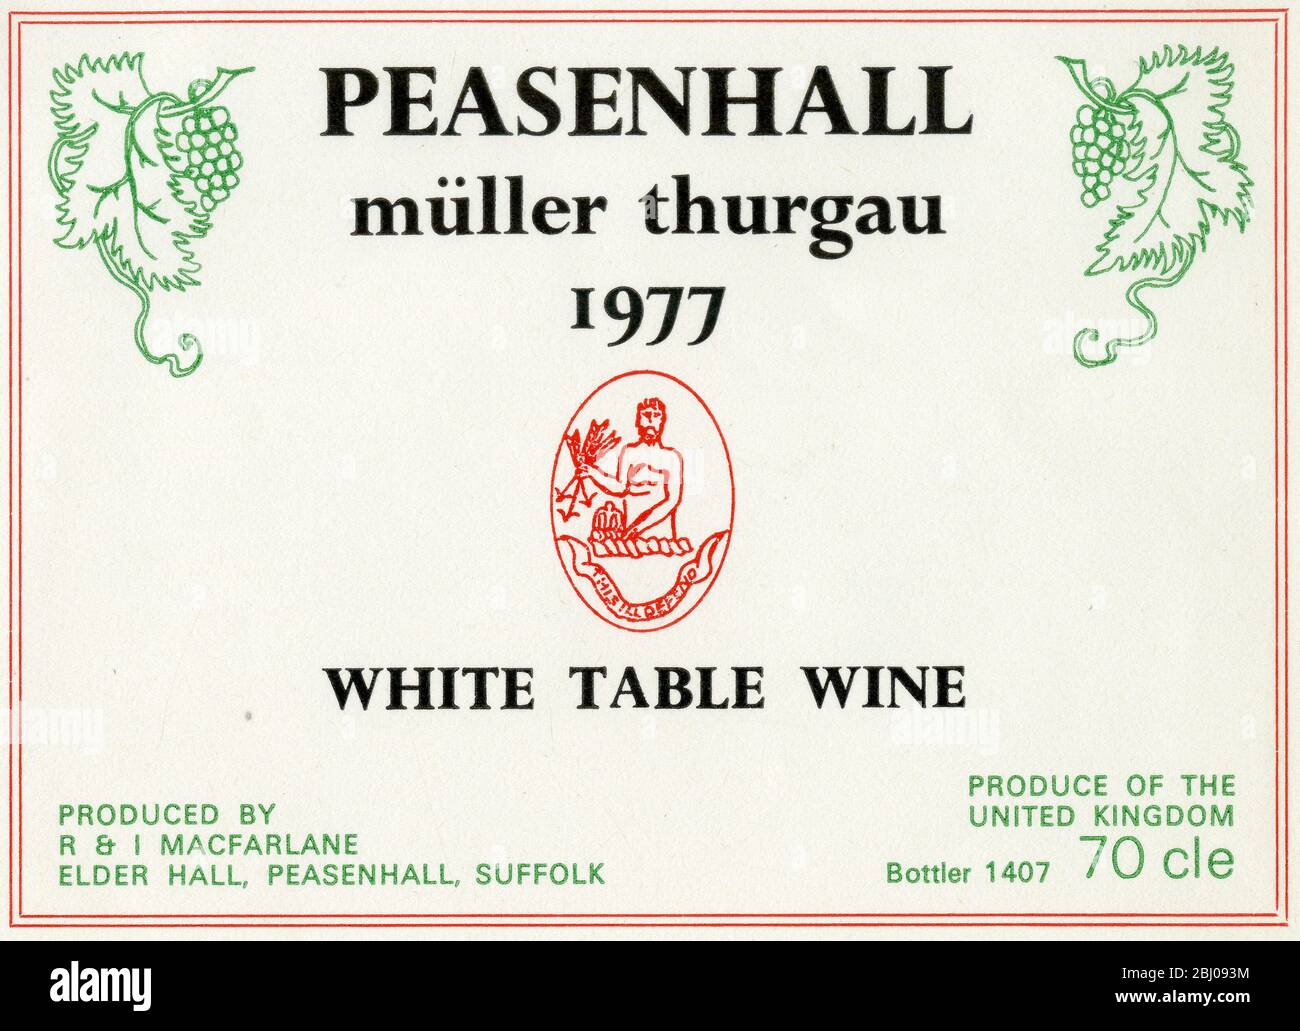 Weinetikett - Weißer Tafelwein Aus Peasanhall. Ein Muller Thurgau Rebsorte Wein von R. und I. Macfarlane, Peasanhall Suffolk. - 1977 Stockfoto